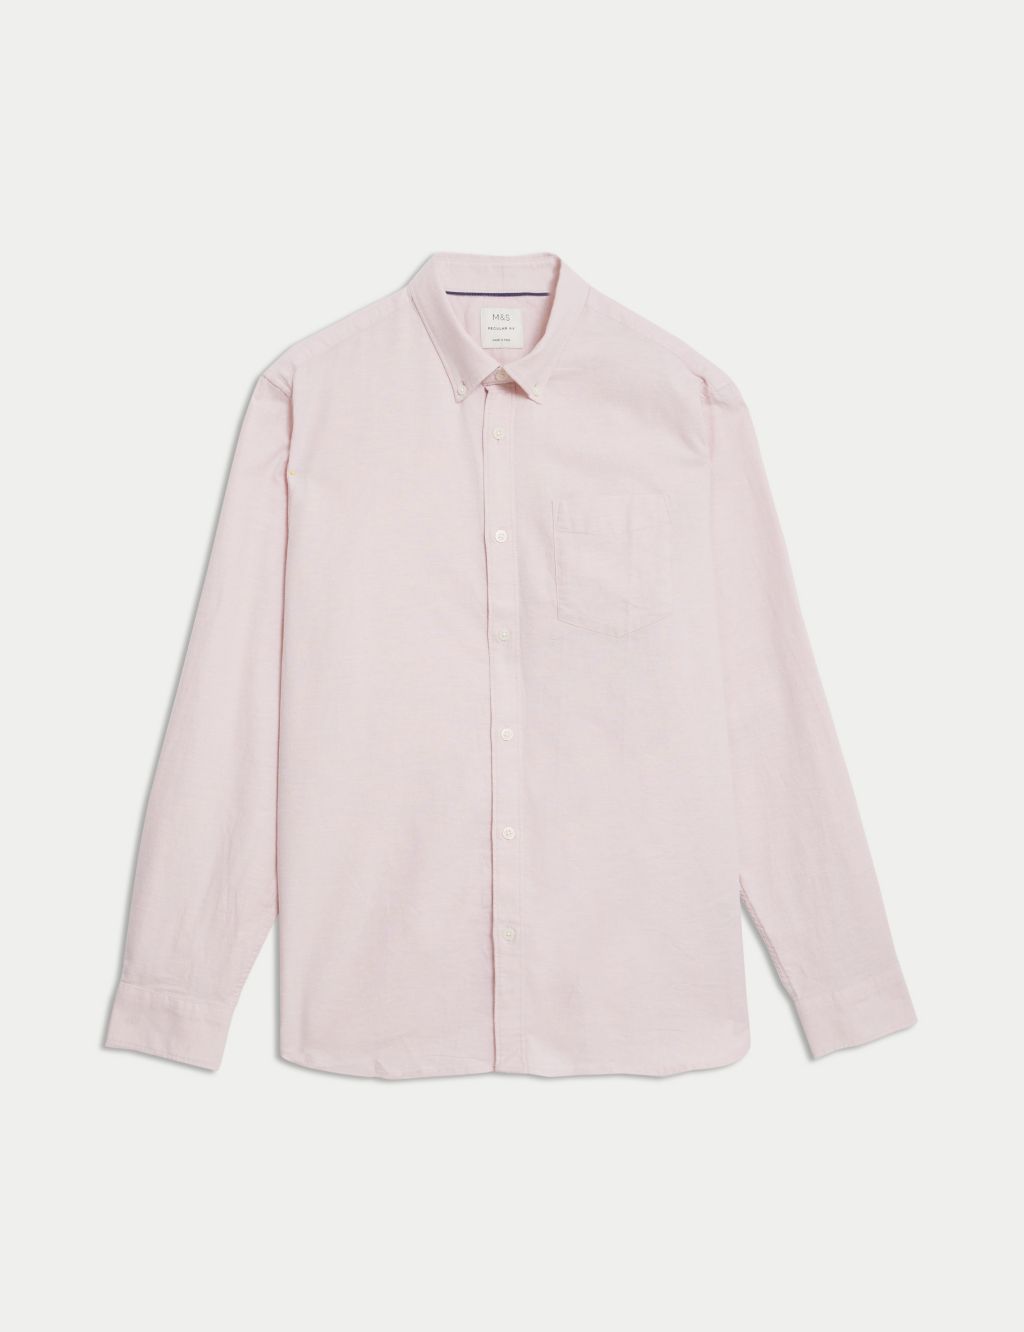 Men's Pink Shirts | M&S